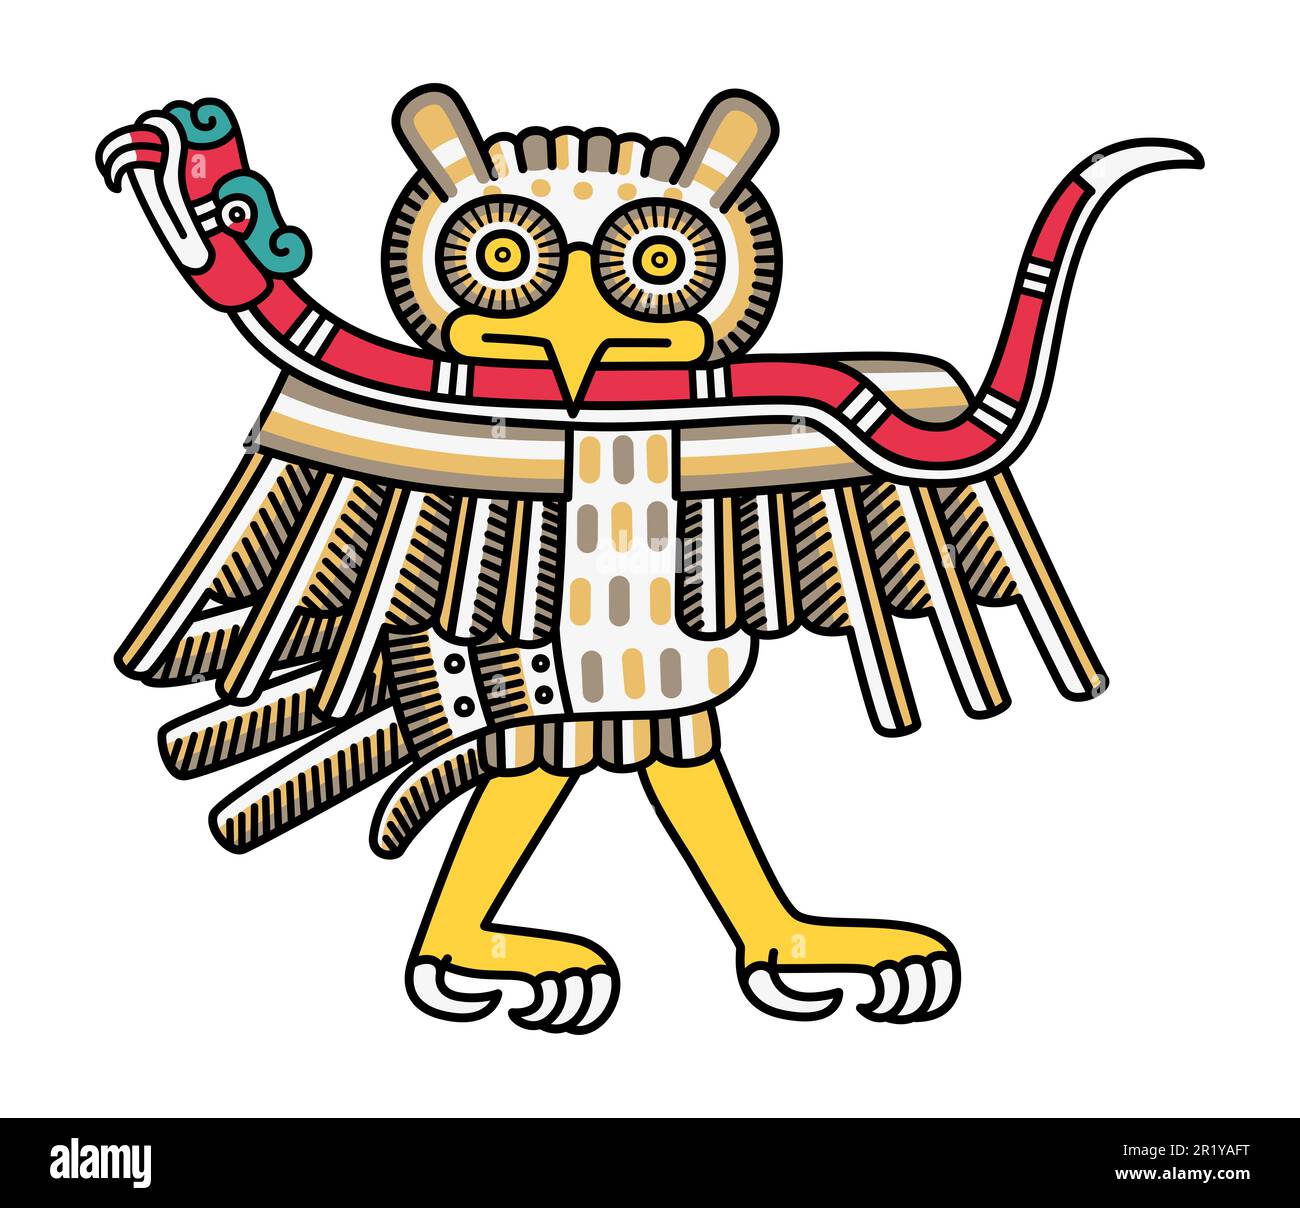 Chouette aztèque avec un serpent de corail. En Aztec, les hiboux de religion ont des liens spéciaux avec le monde inférieur et sont considérés comme de mauvais présages. Banque D'Images